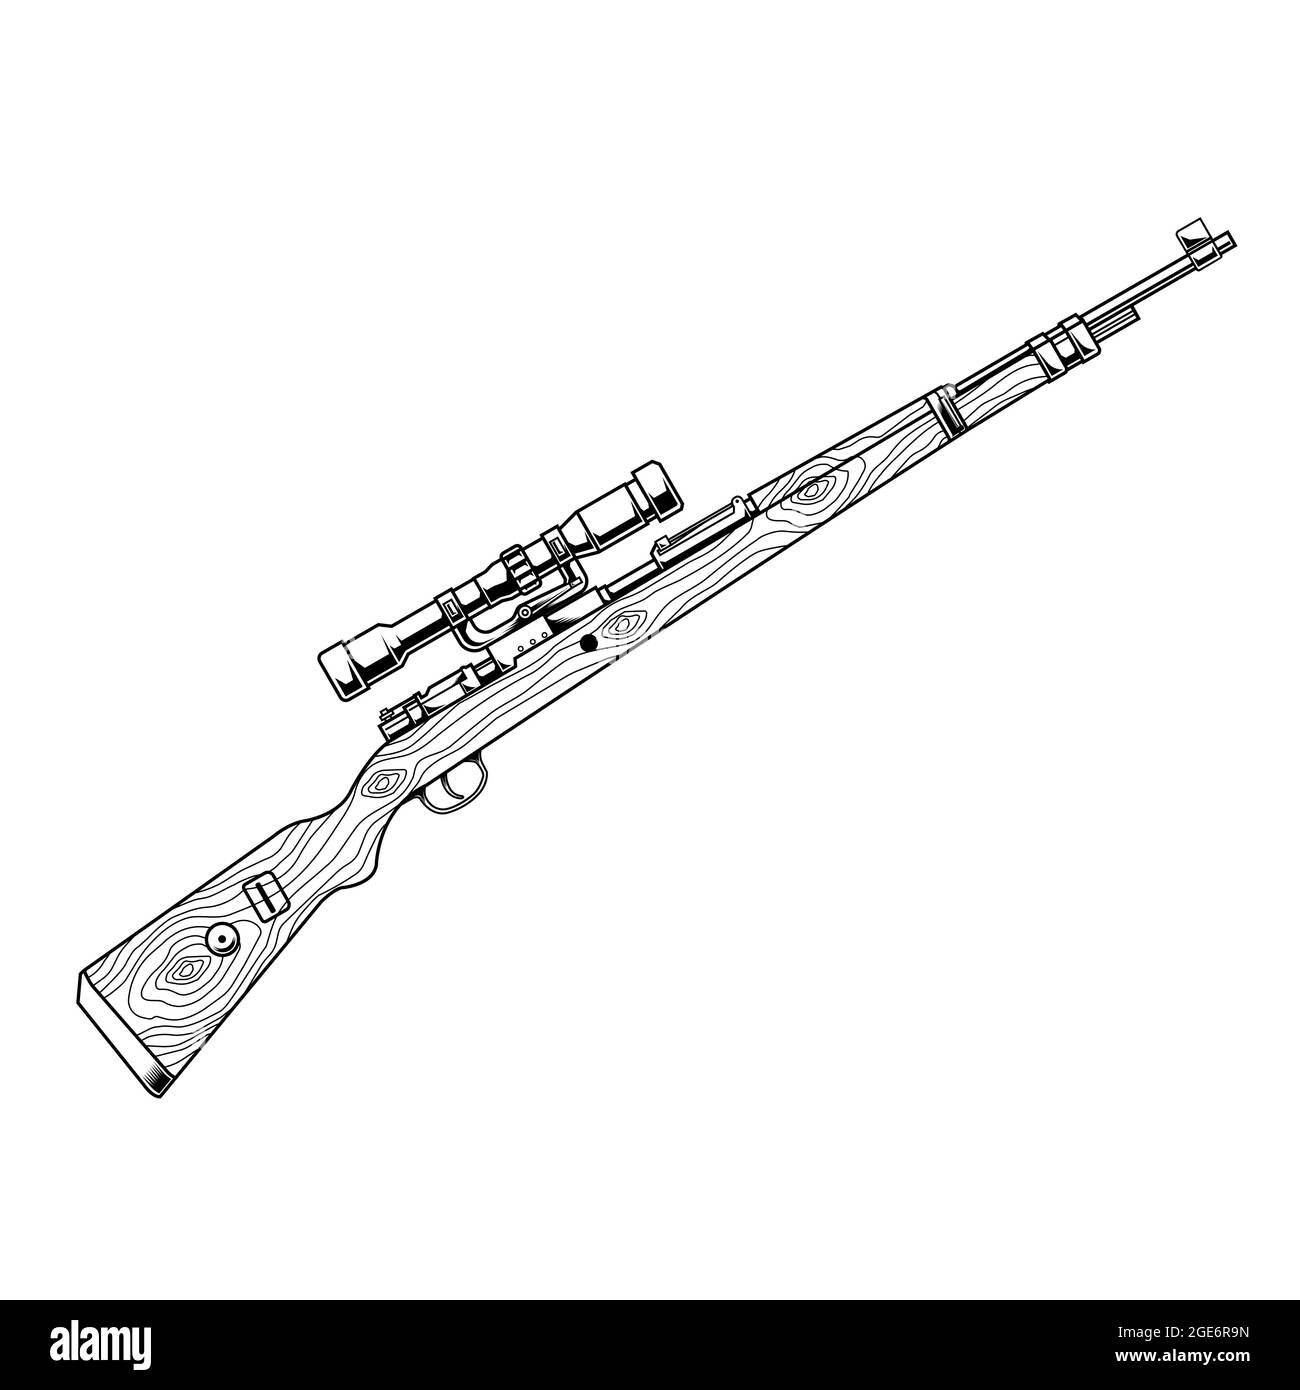 line art guns karabiner 98 Stock Vector